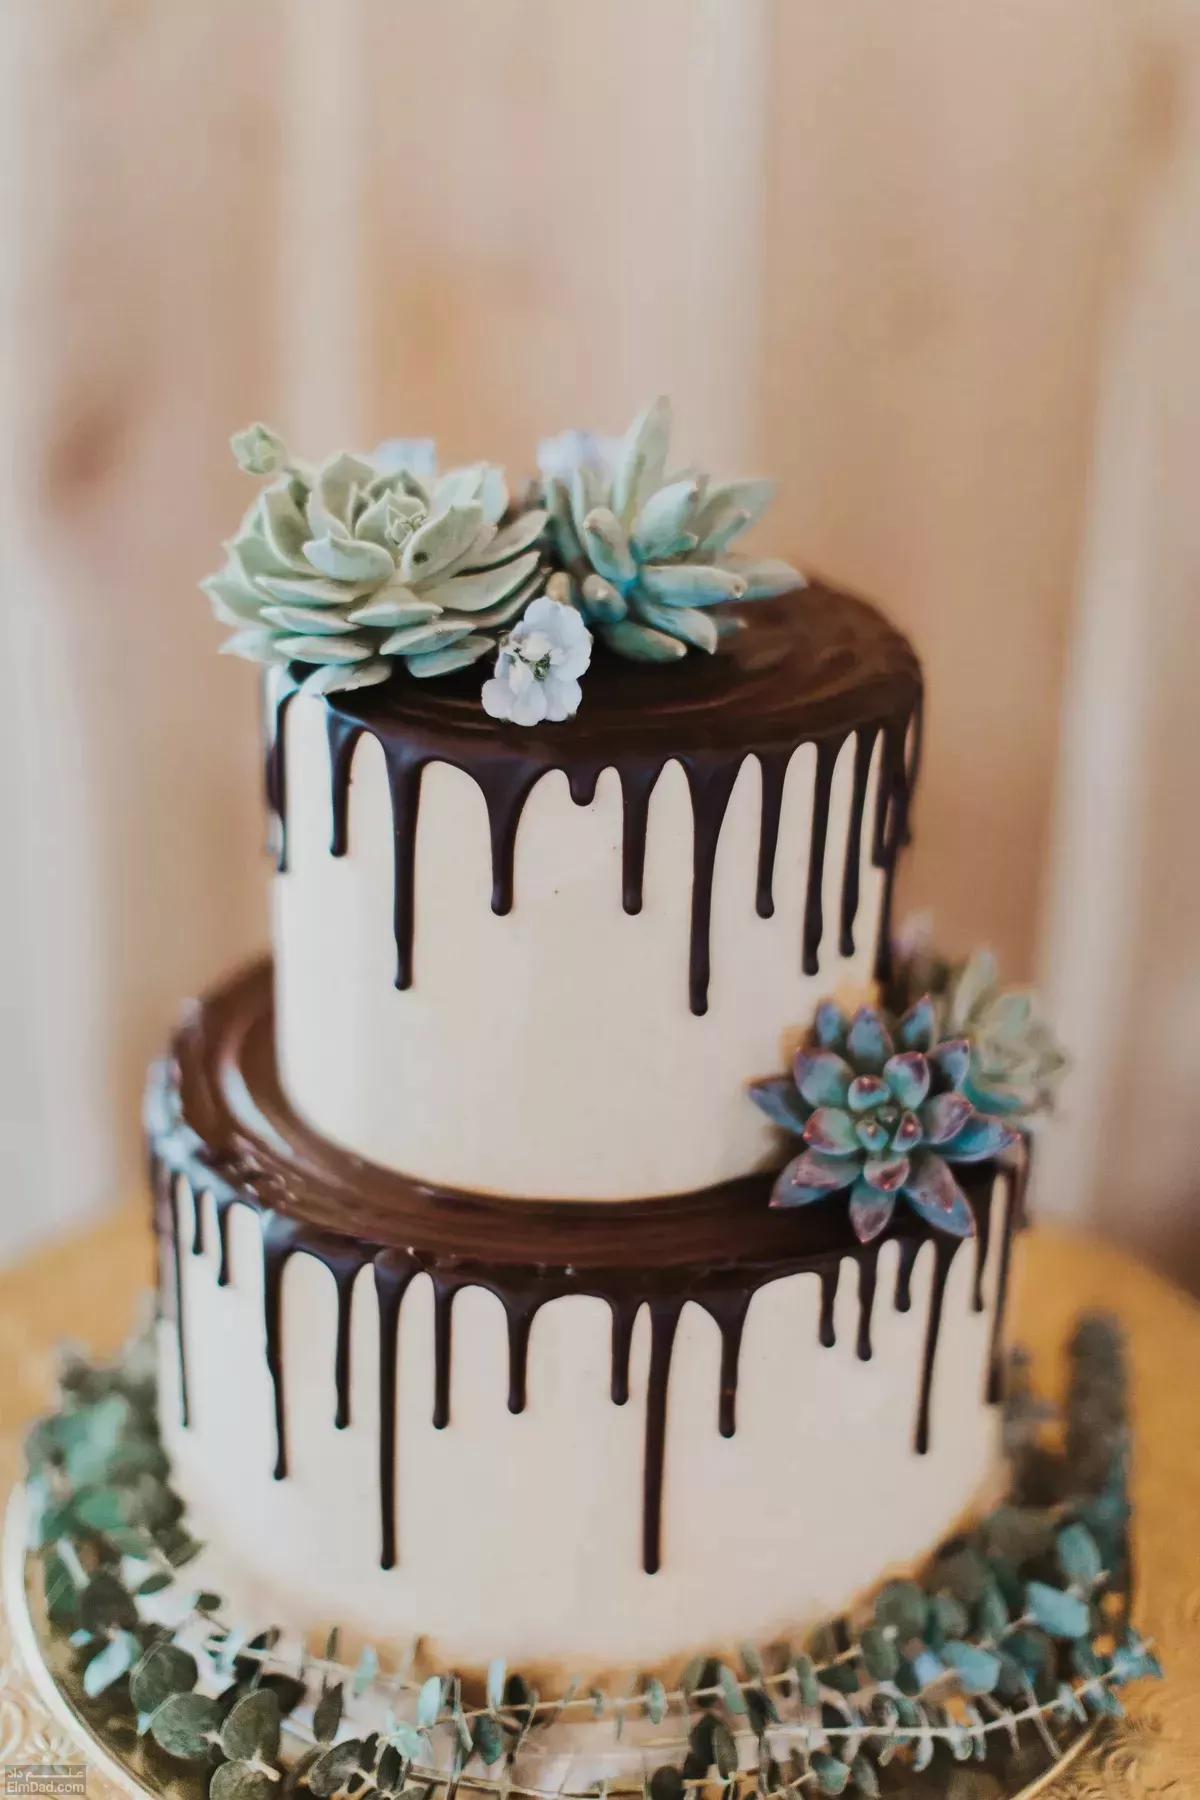 انواع طرح های جذاب برای کیک دو طبقه عروسی